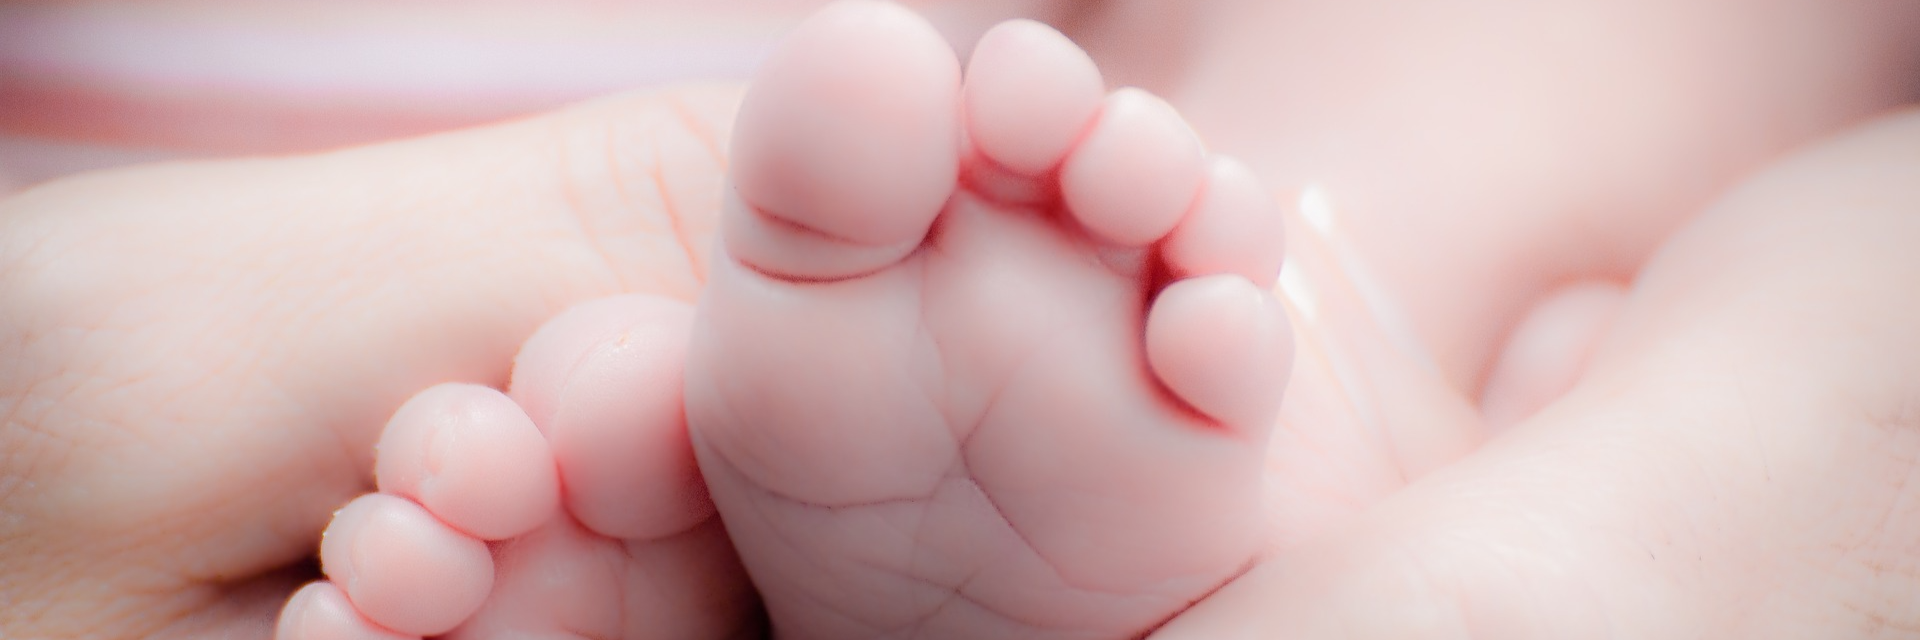 vauvan jalat aikuisen käsissä